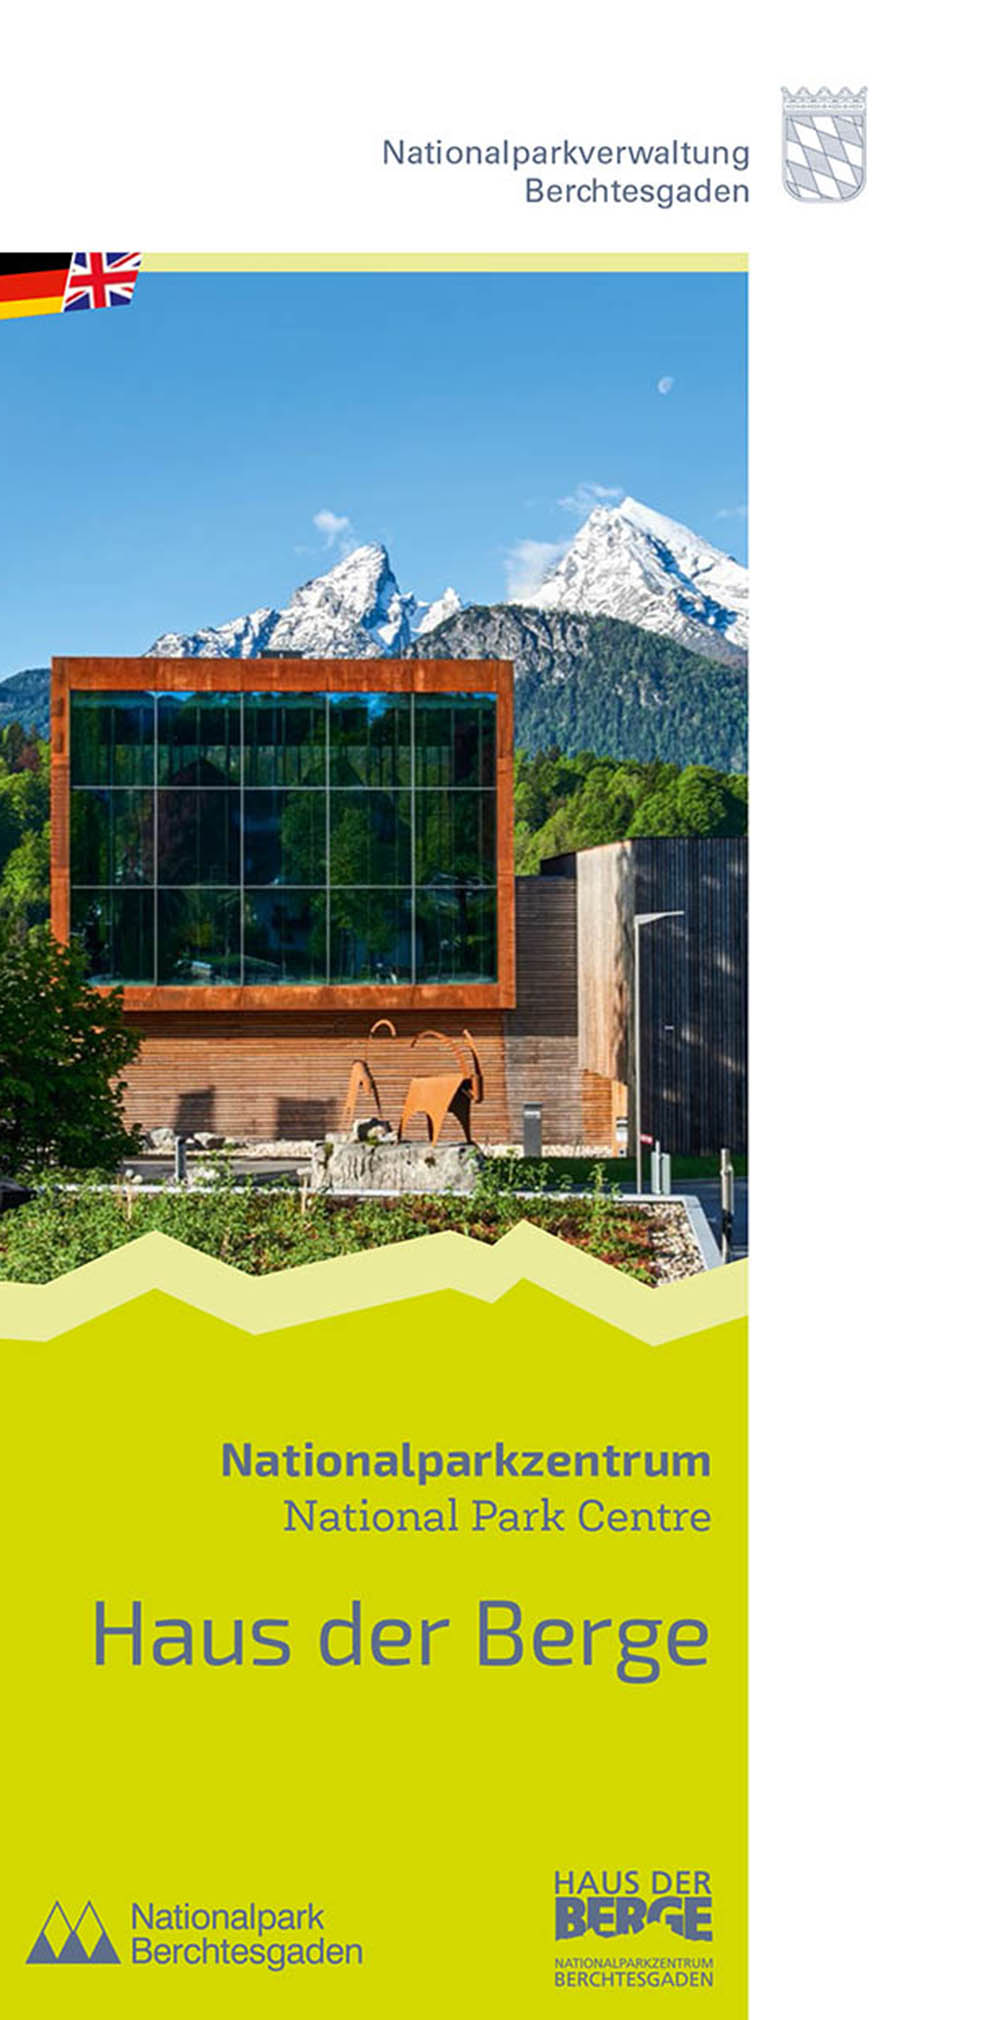 Nationalparkzentrum „Haus der Berge“ Programme, Öffnungszeiten, Preise & Anreise